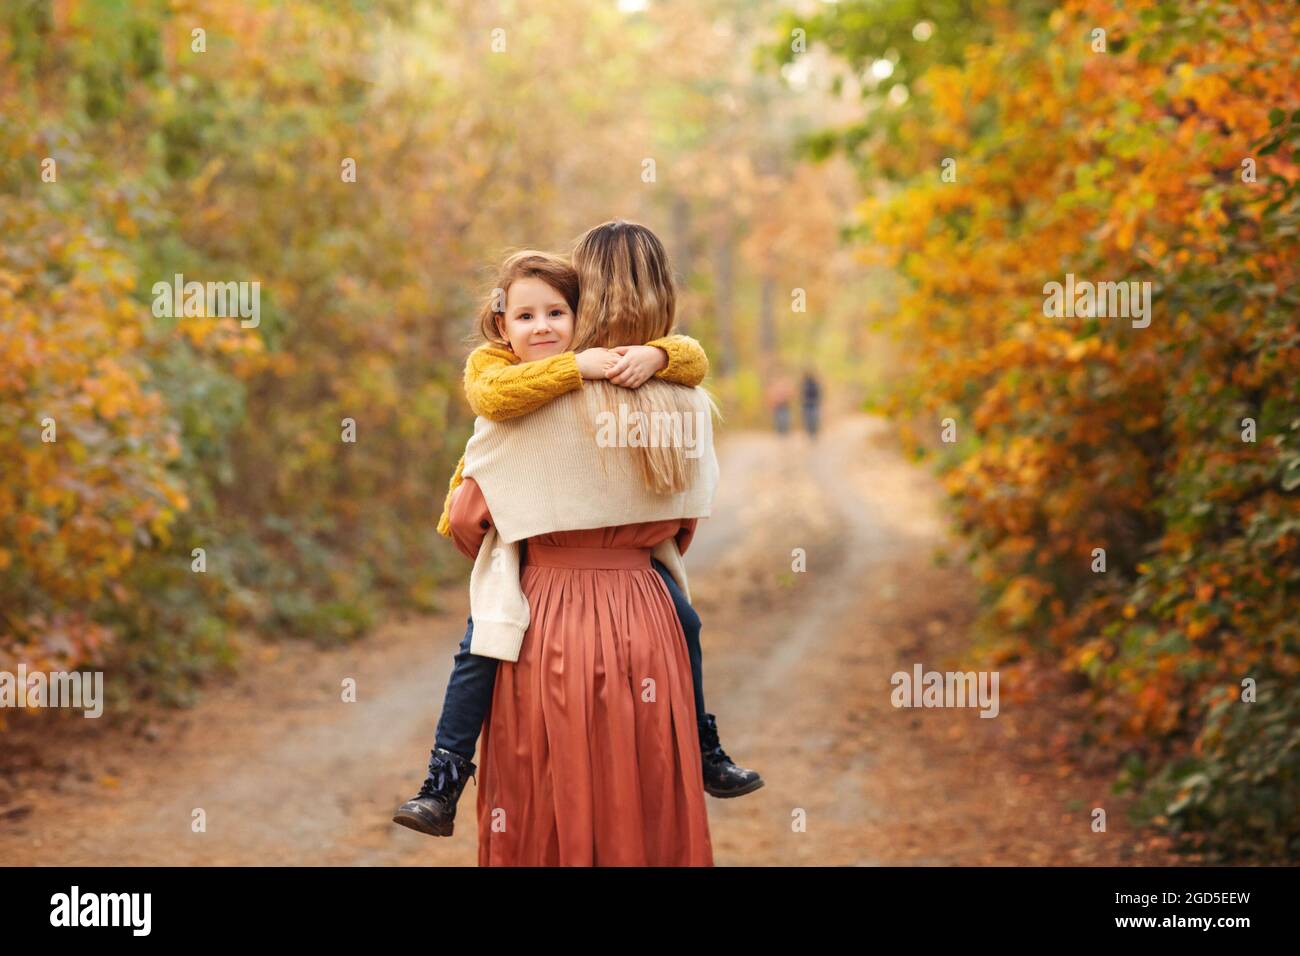 Jeune famille, mère et petit fils, sur la promenade dans la forêt d'automne, mère et enfant tenant les mains et marchant le long du chemin couvert de feuilles d'arbre jaune, spe Banque D'Images